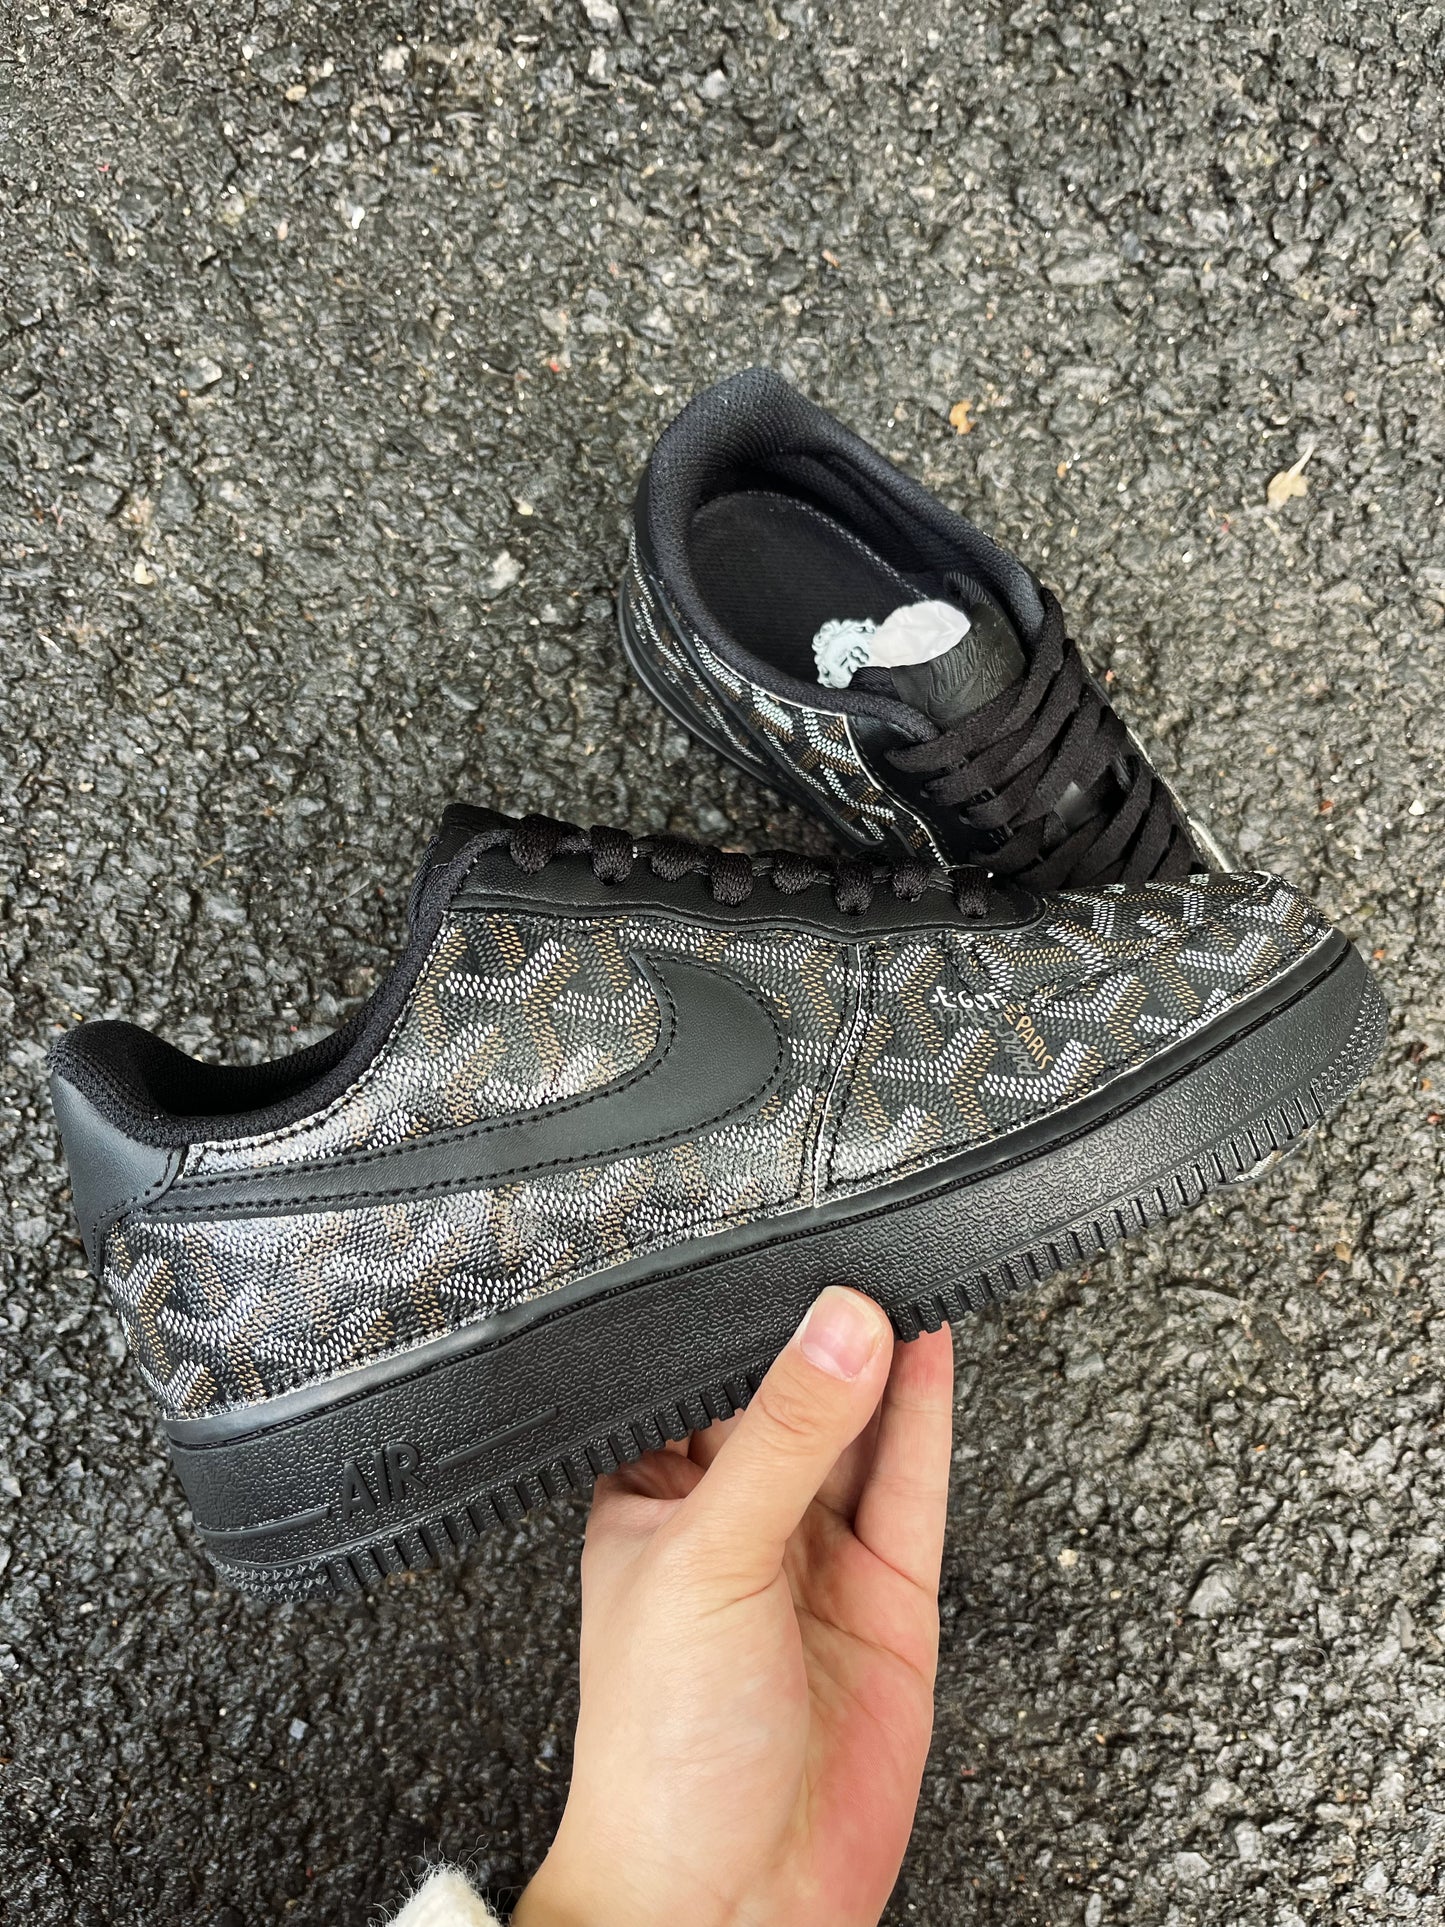 Black Full LV Leather Air Force One Custom Sneaker for Man – WendyCustom